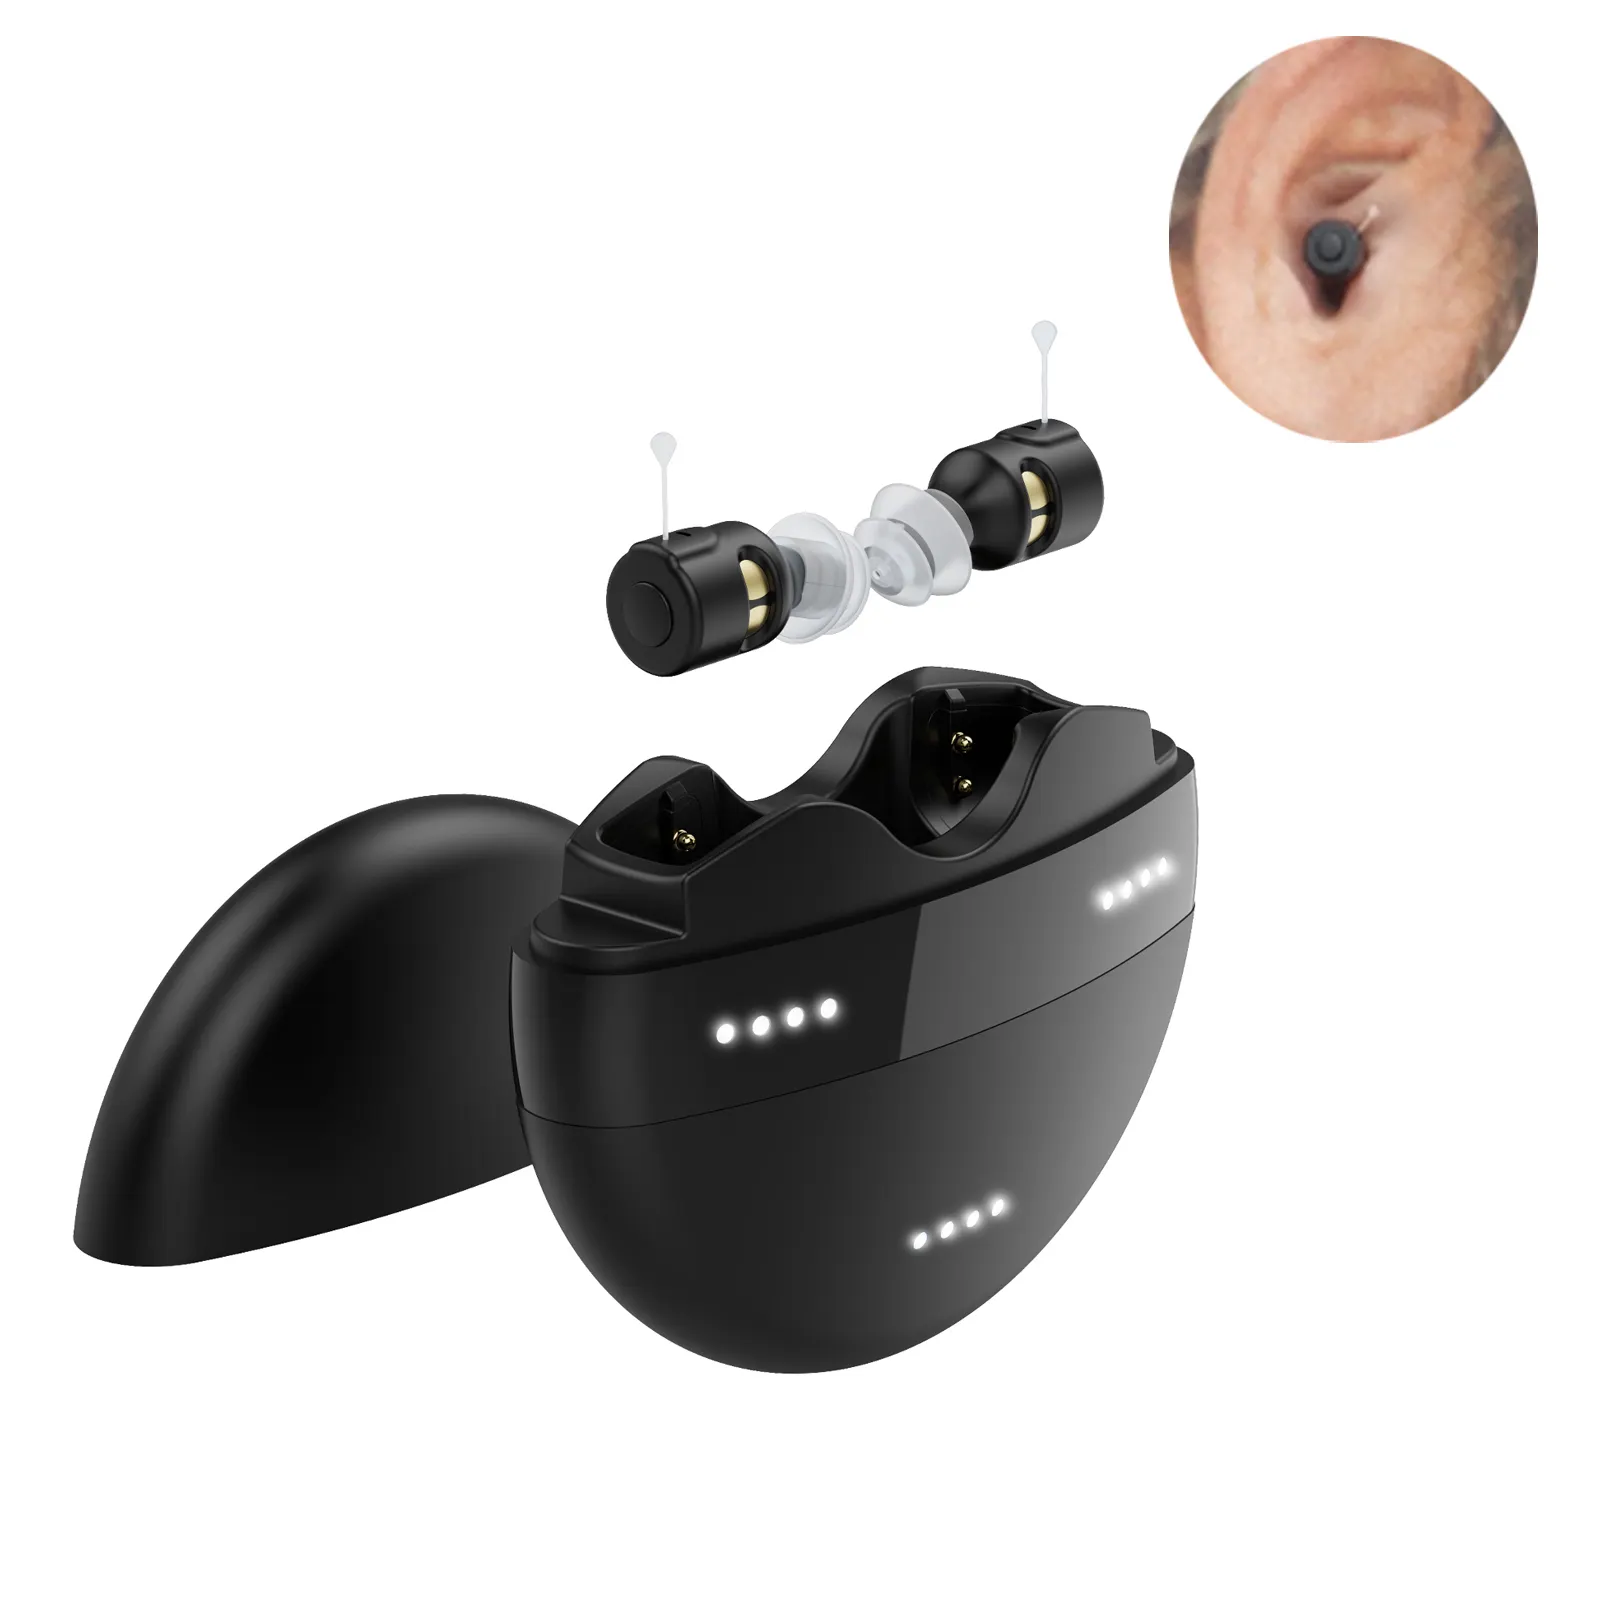 Nuove tendenze del prodotto mini apparecchio acustico digitale ricaricabile invisibile pocket medical cic apparecchi acustici per anziani